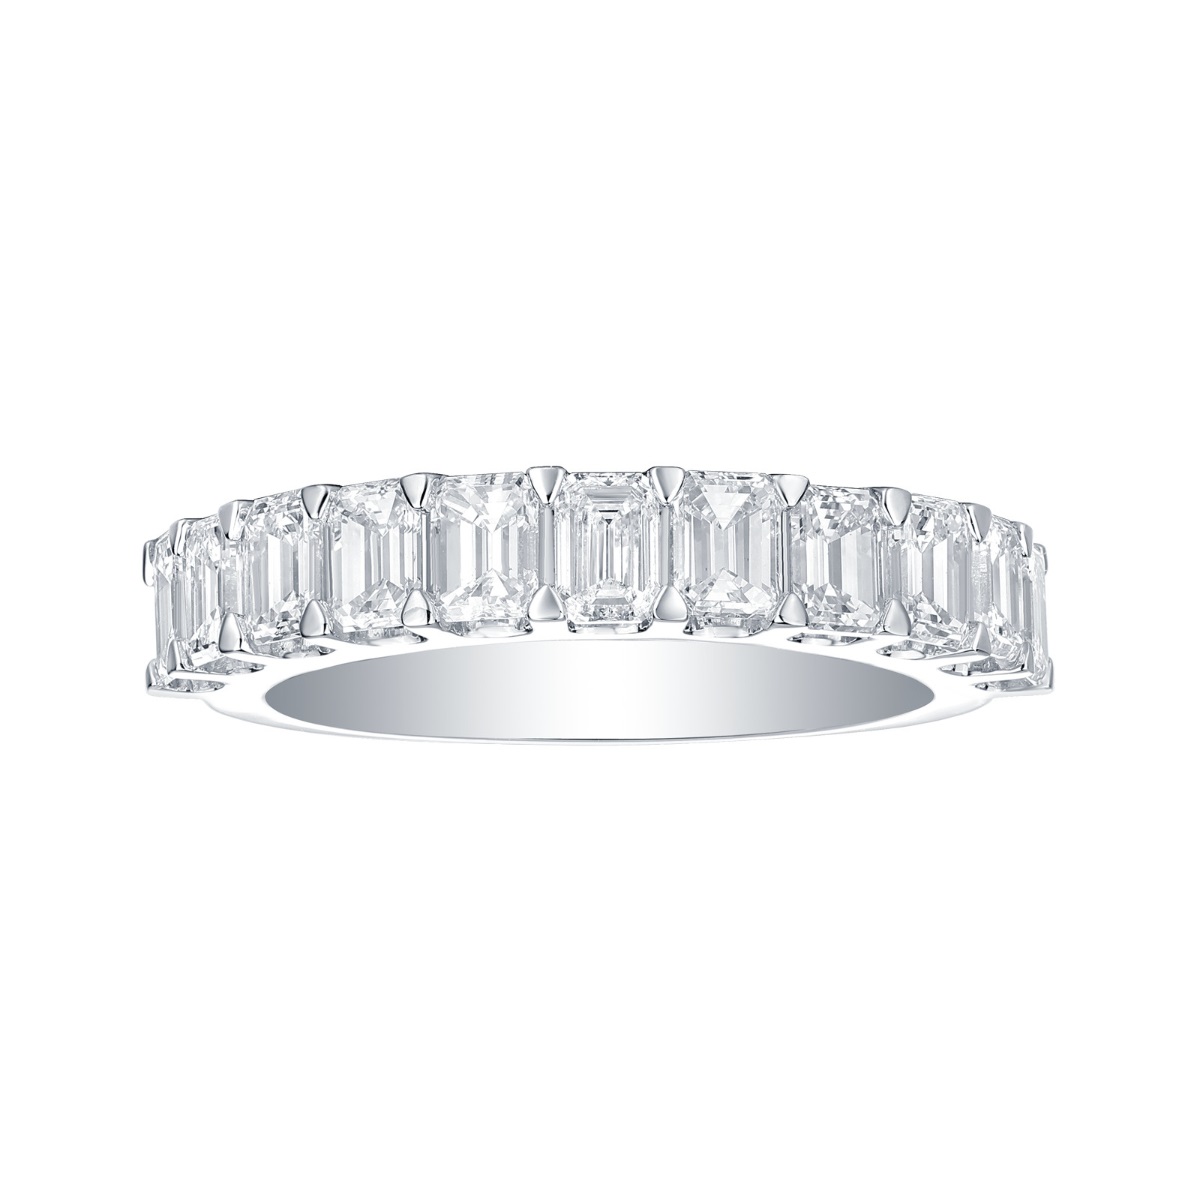 R36844WHT – 18K White Gold Diamond Ring, 2.16 TCW